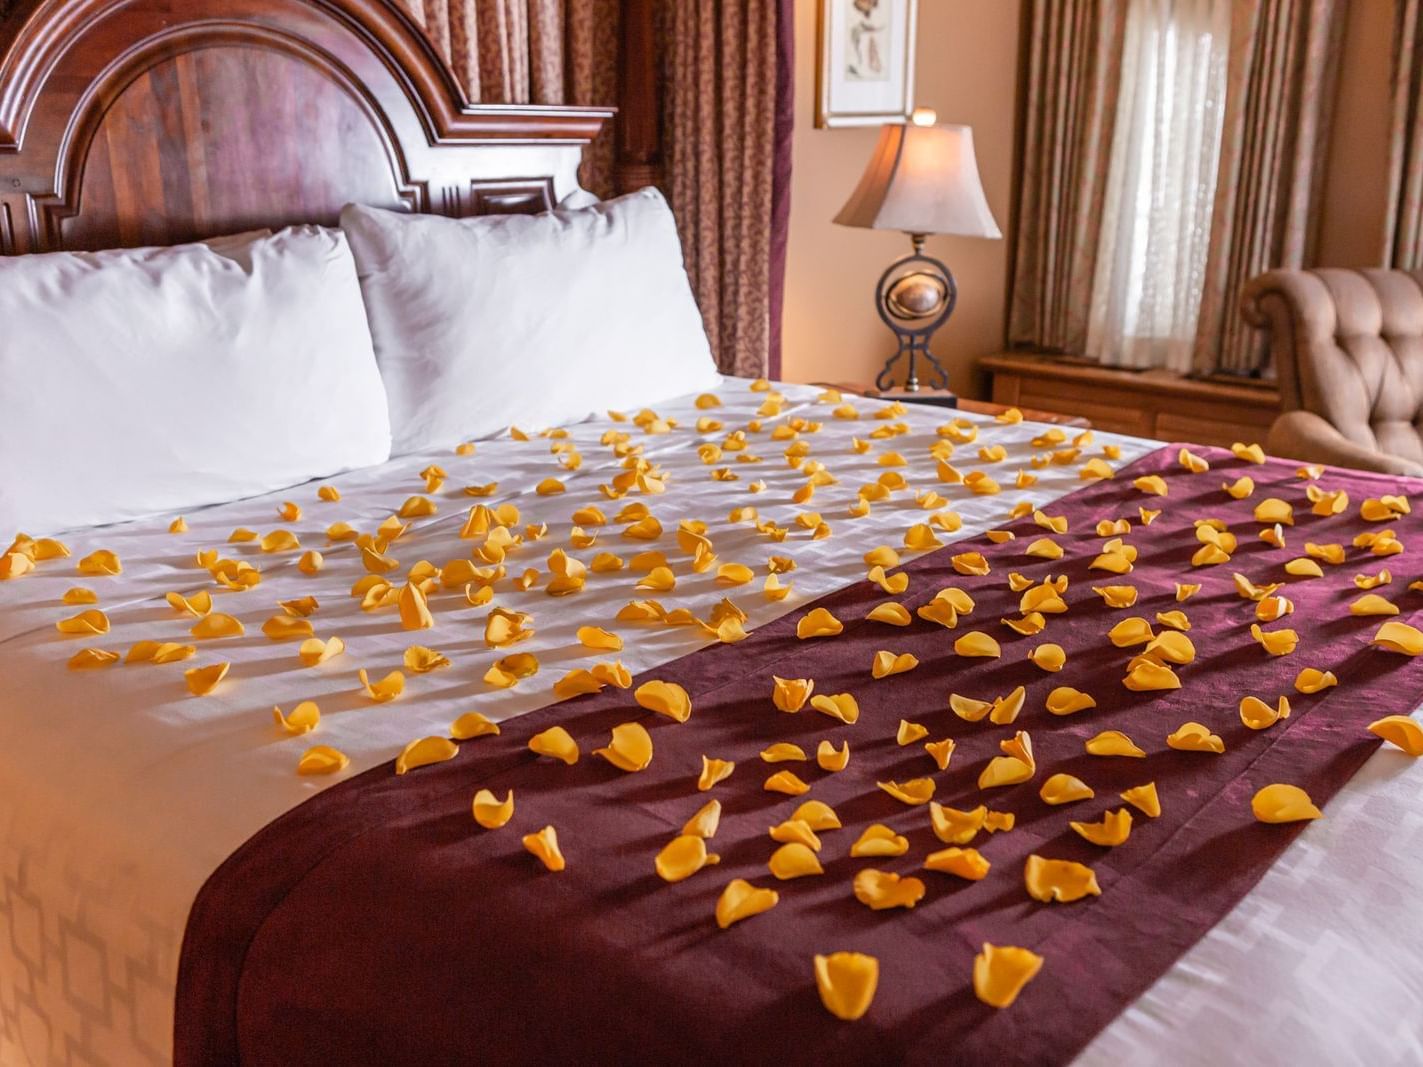 orange flower petals on a bed